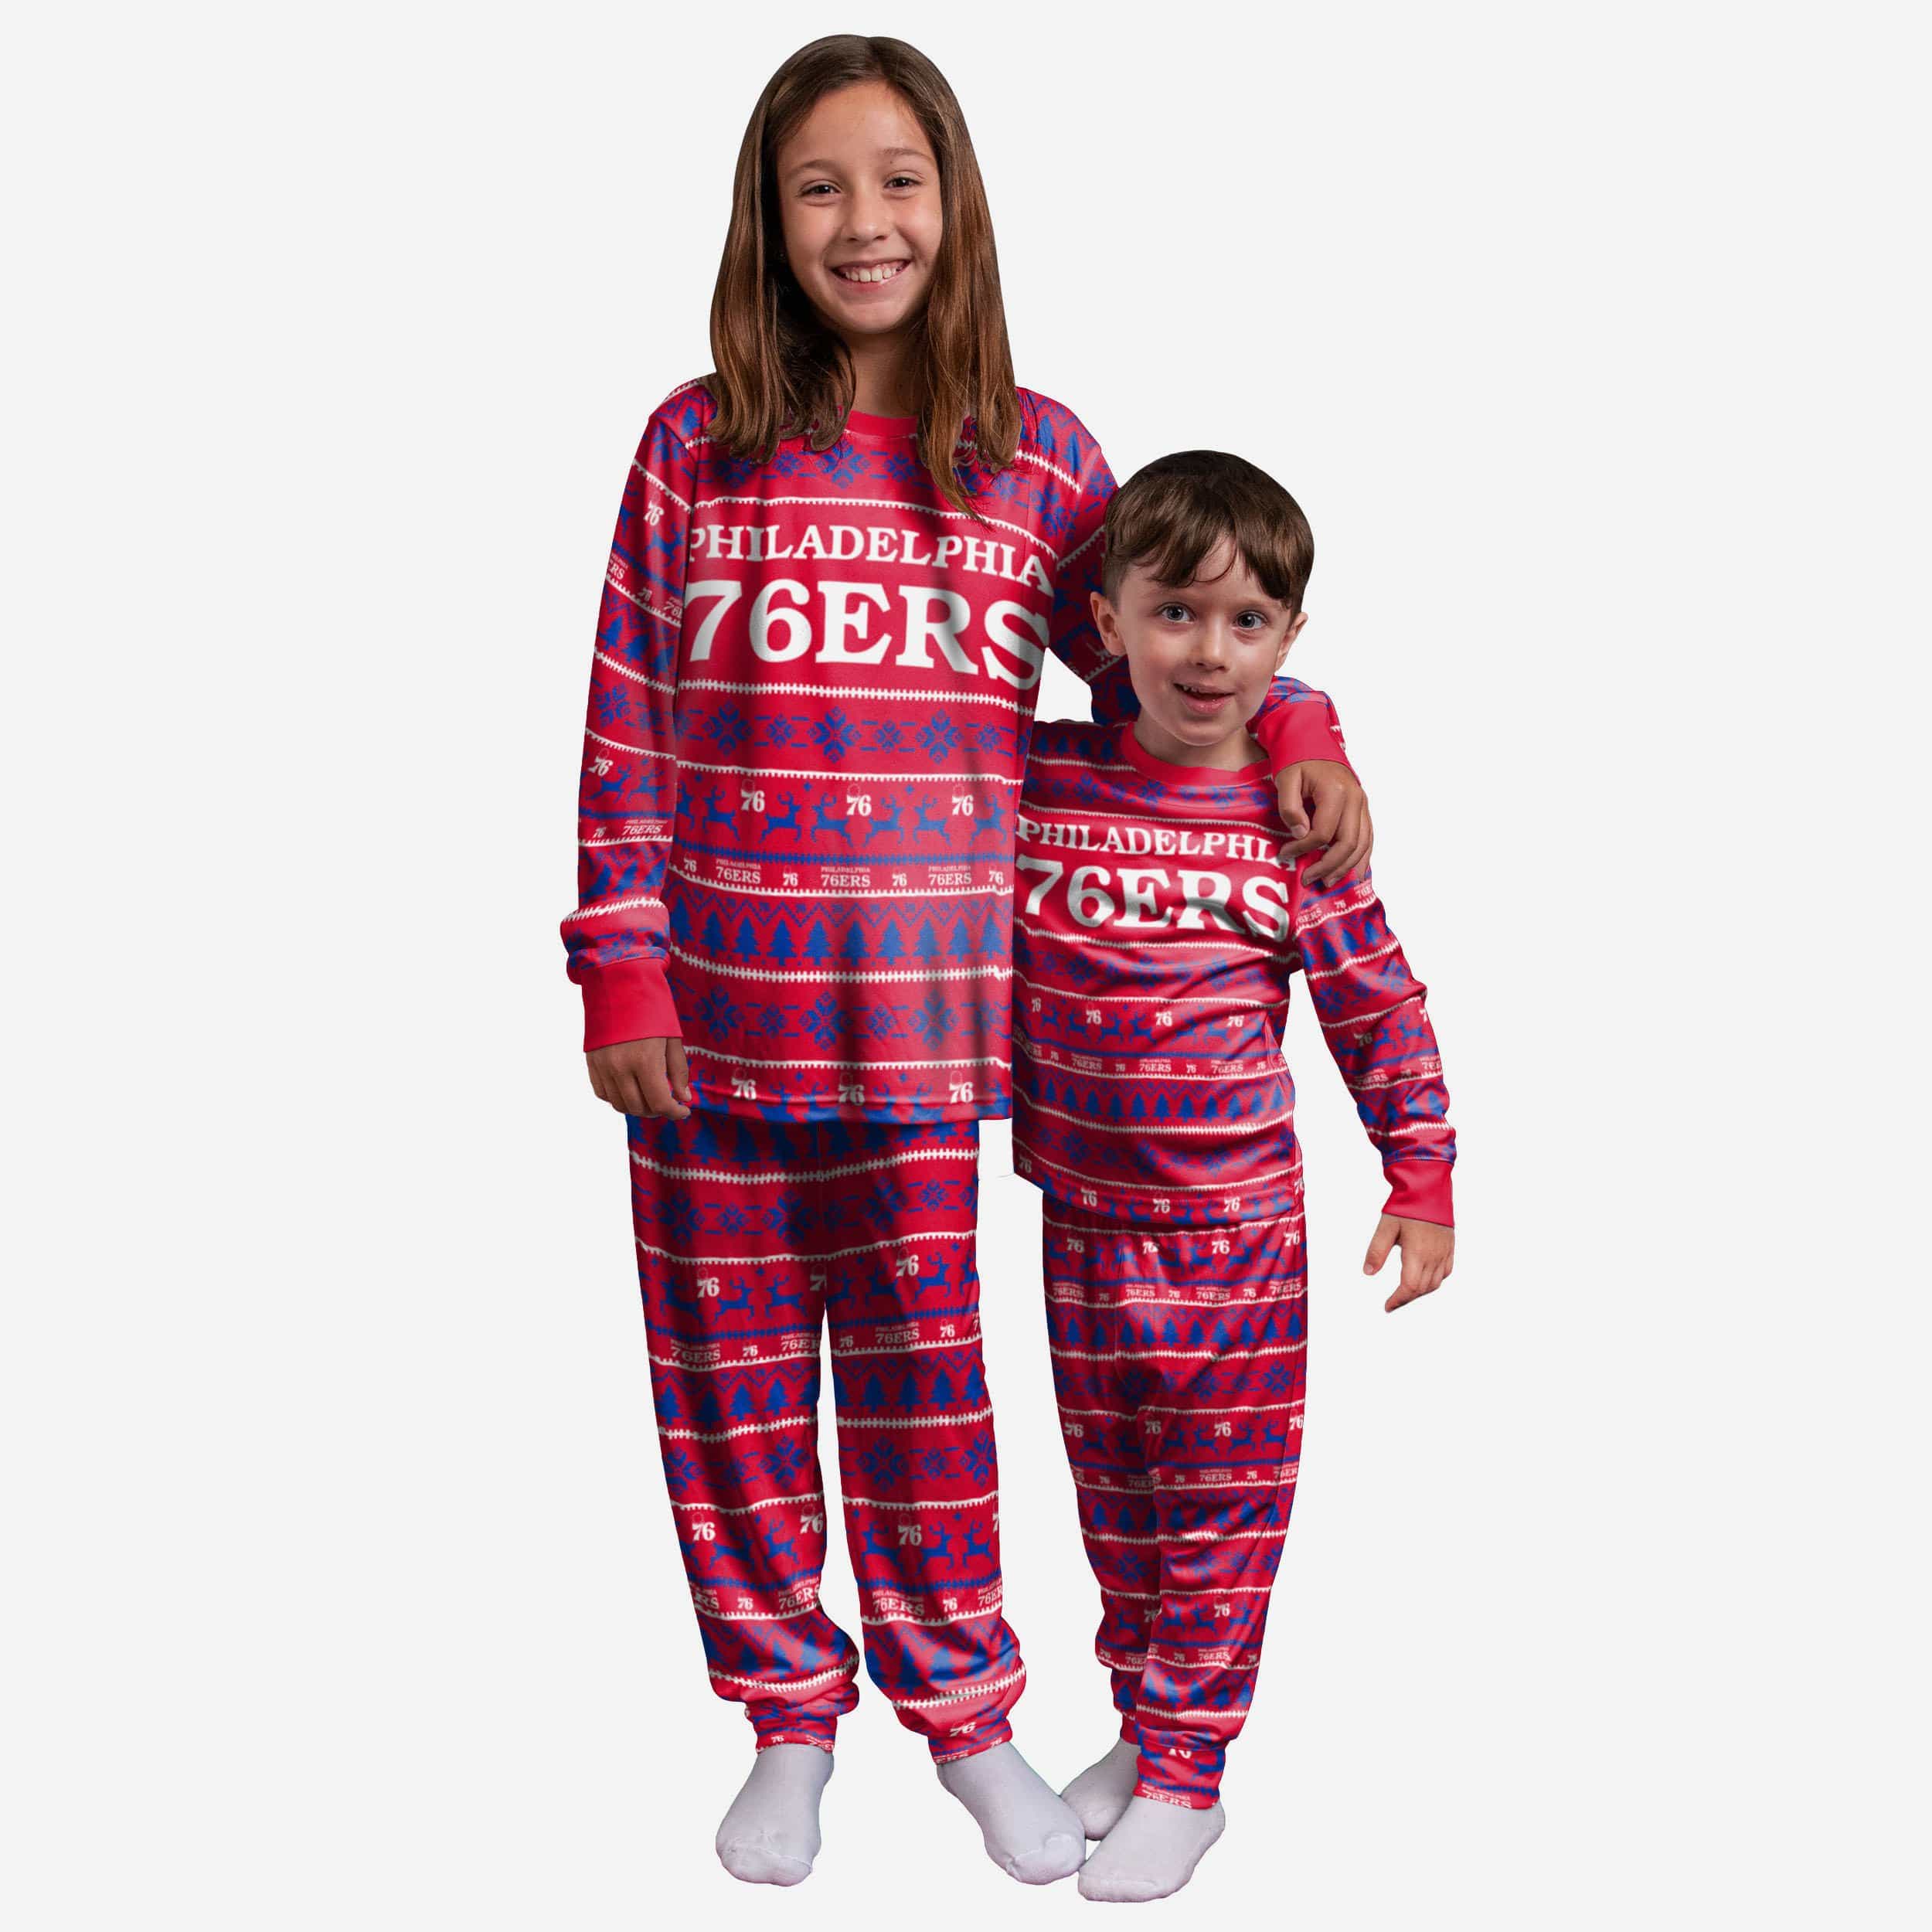 FOCO Philadelphia 76ers NBA Family Holiday Pajamas